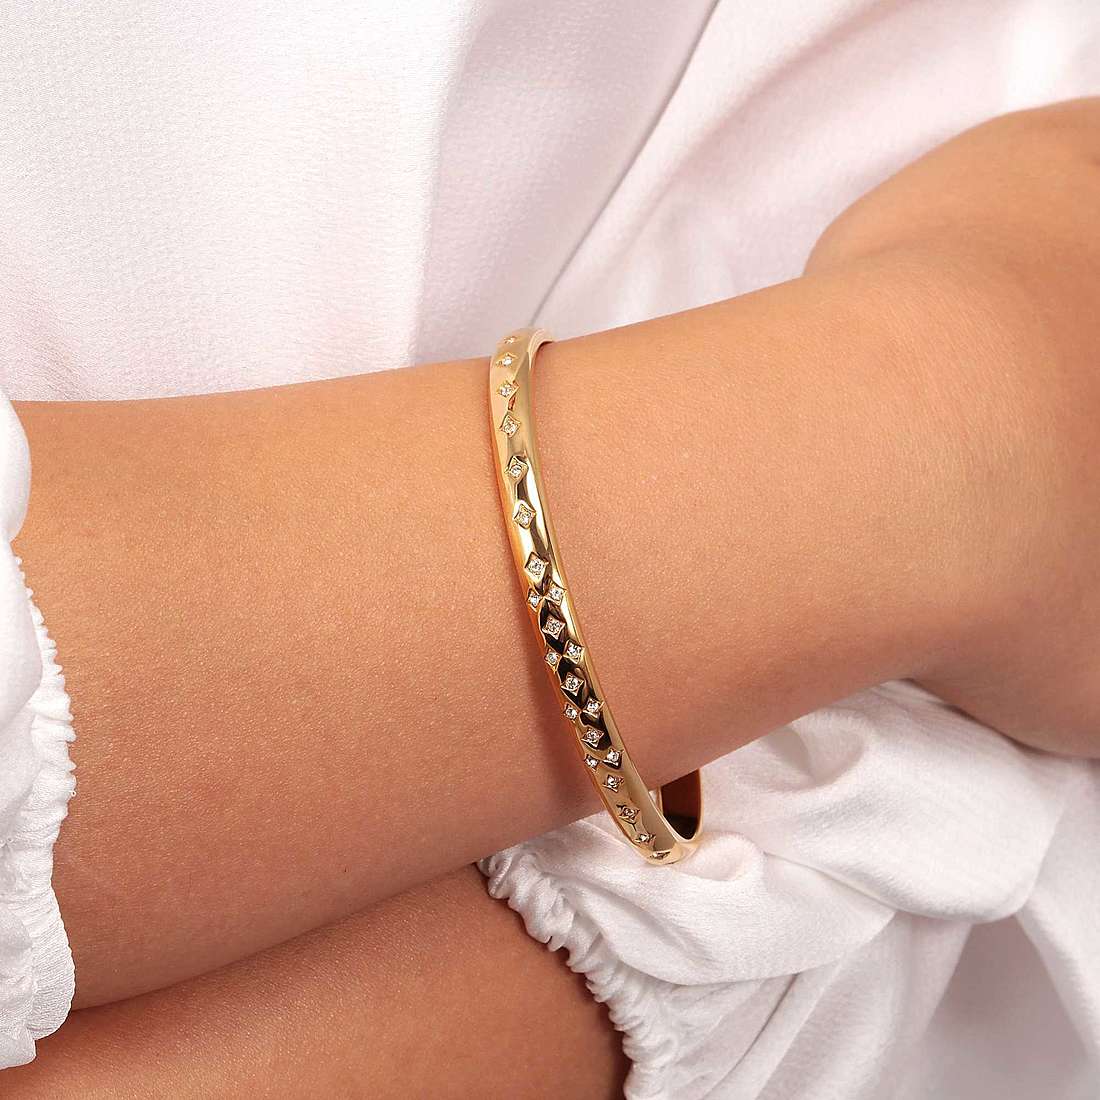 Morellato bracelets Cerchi woman SAKM81 wearing